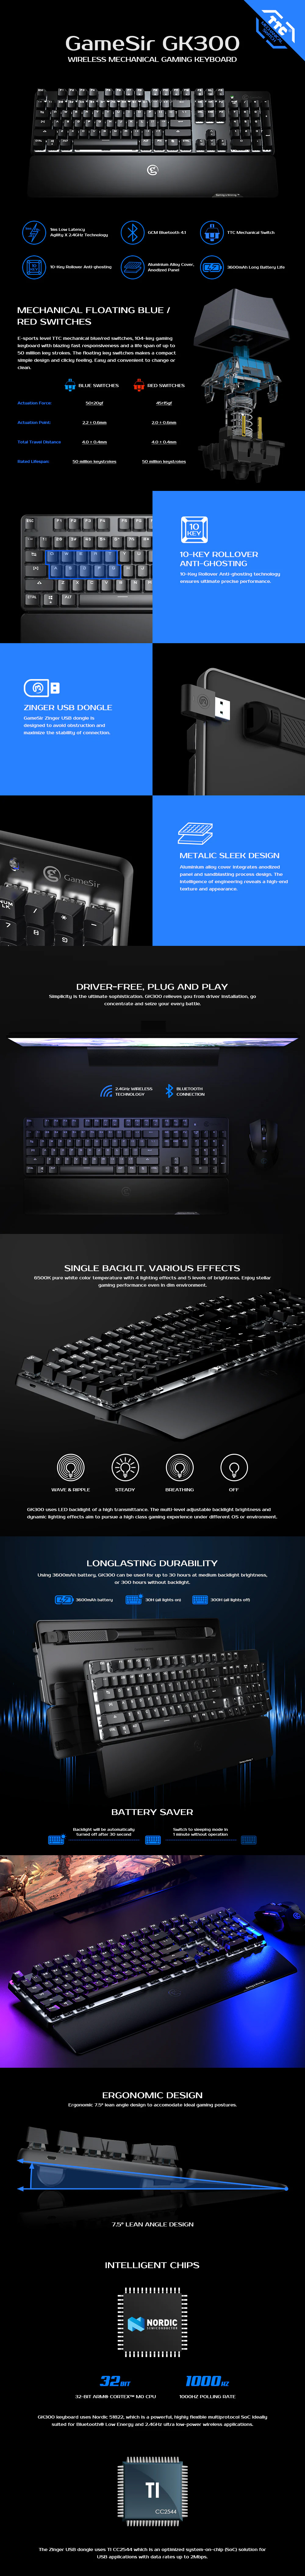 Keyboards-Gamesir-GK300-Wireless-Mechanical-Gaming-Keyboard-1